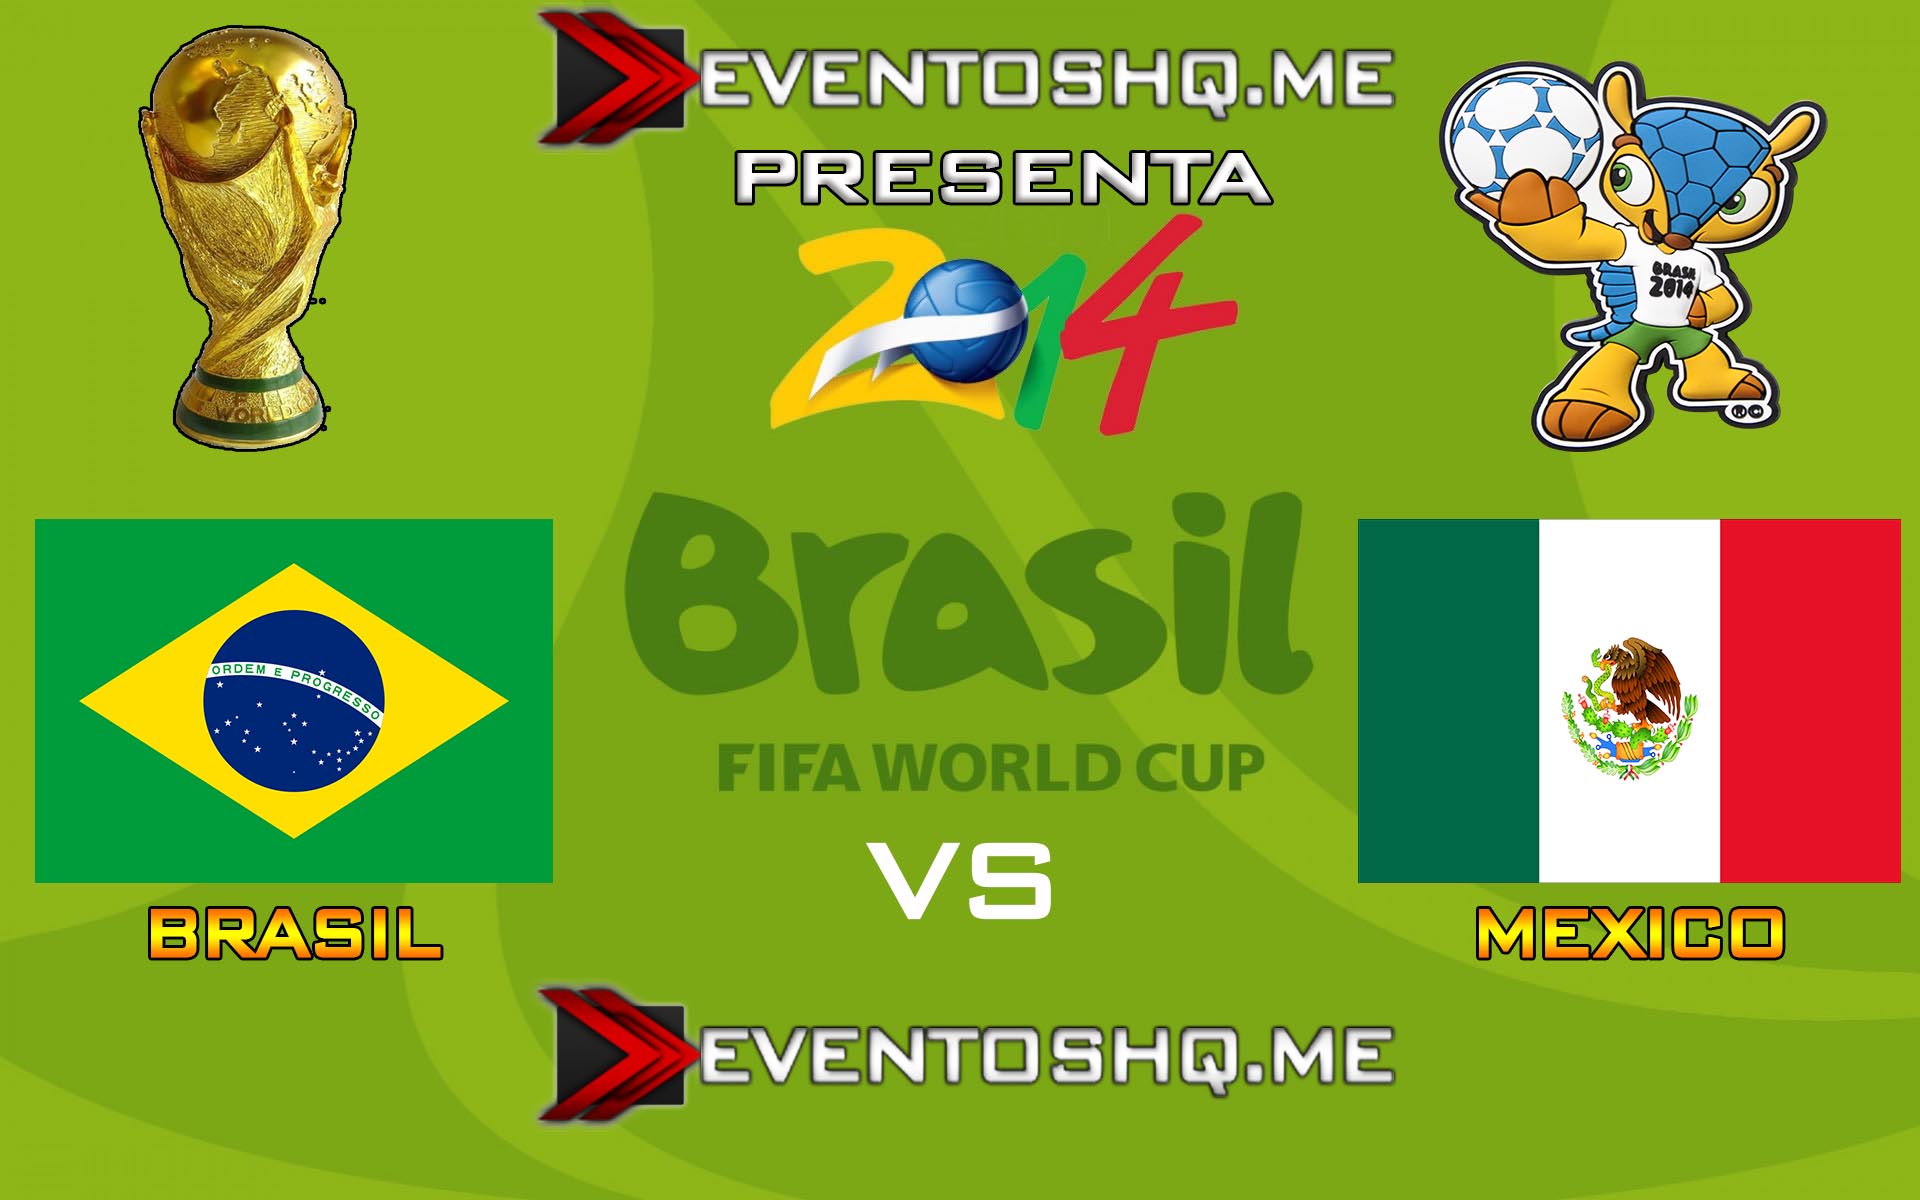 Ver en Vivo Brasil vs Mexico Mundial Brasil 2014 www.eventoshq.me